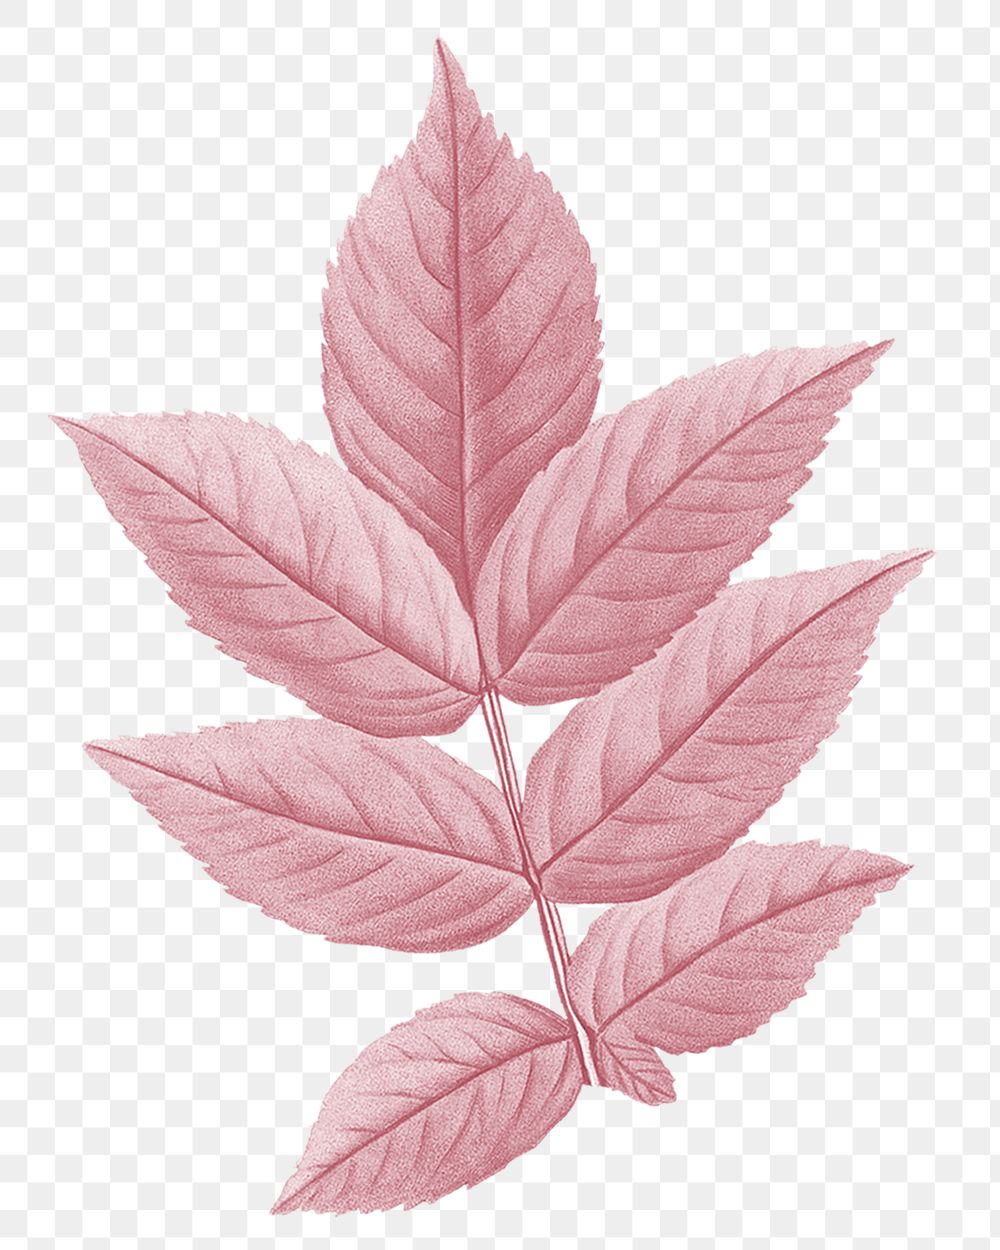 Autumn pink leaf png, transparent background